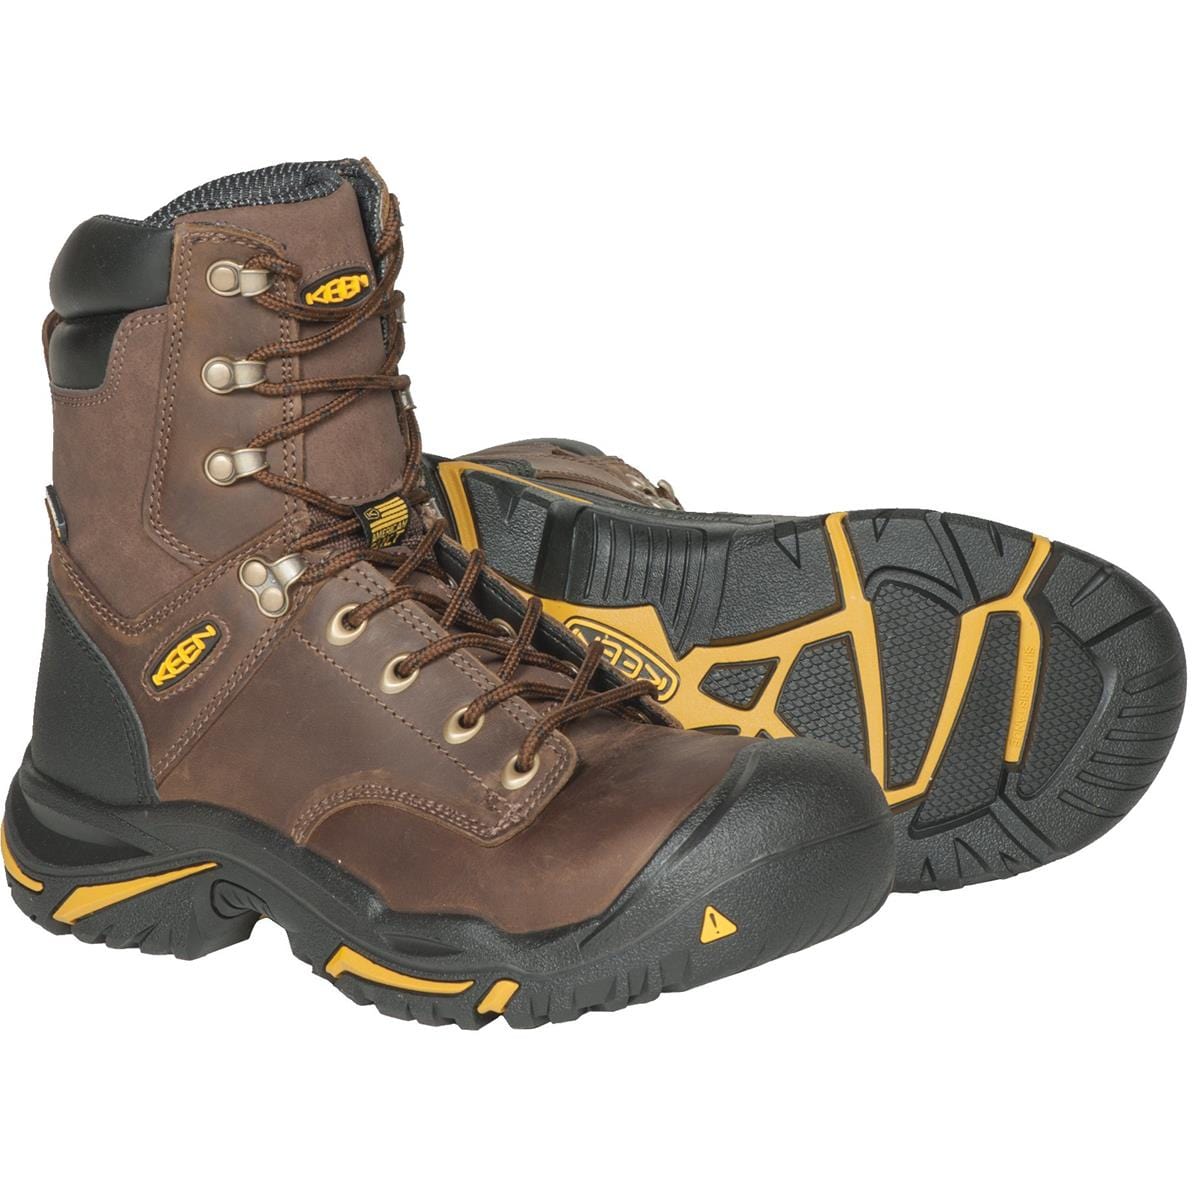 KEEN Mt. Vernon Waterproof Leather Work Boots